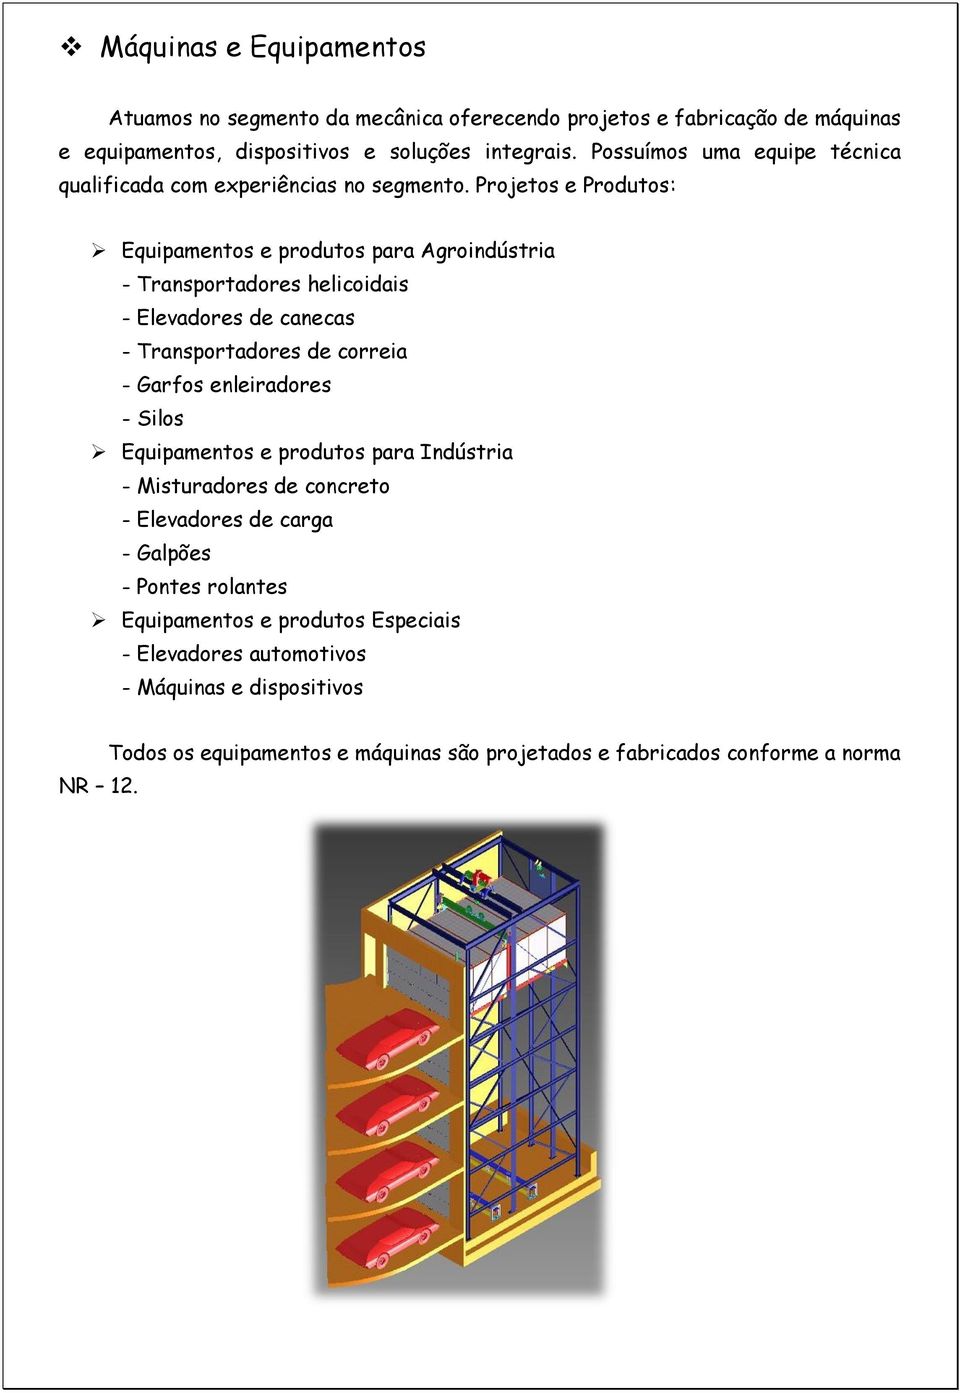 Projetos e Produtos: Equipamentos e produtos para Agroindústria - Transportadores helicoidais - Elevadores de canecas - Transportadores de correia - Garfos enleiradores -